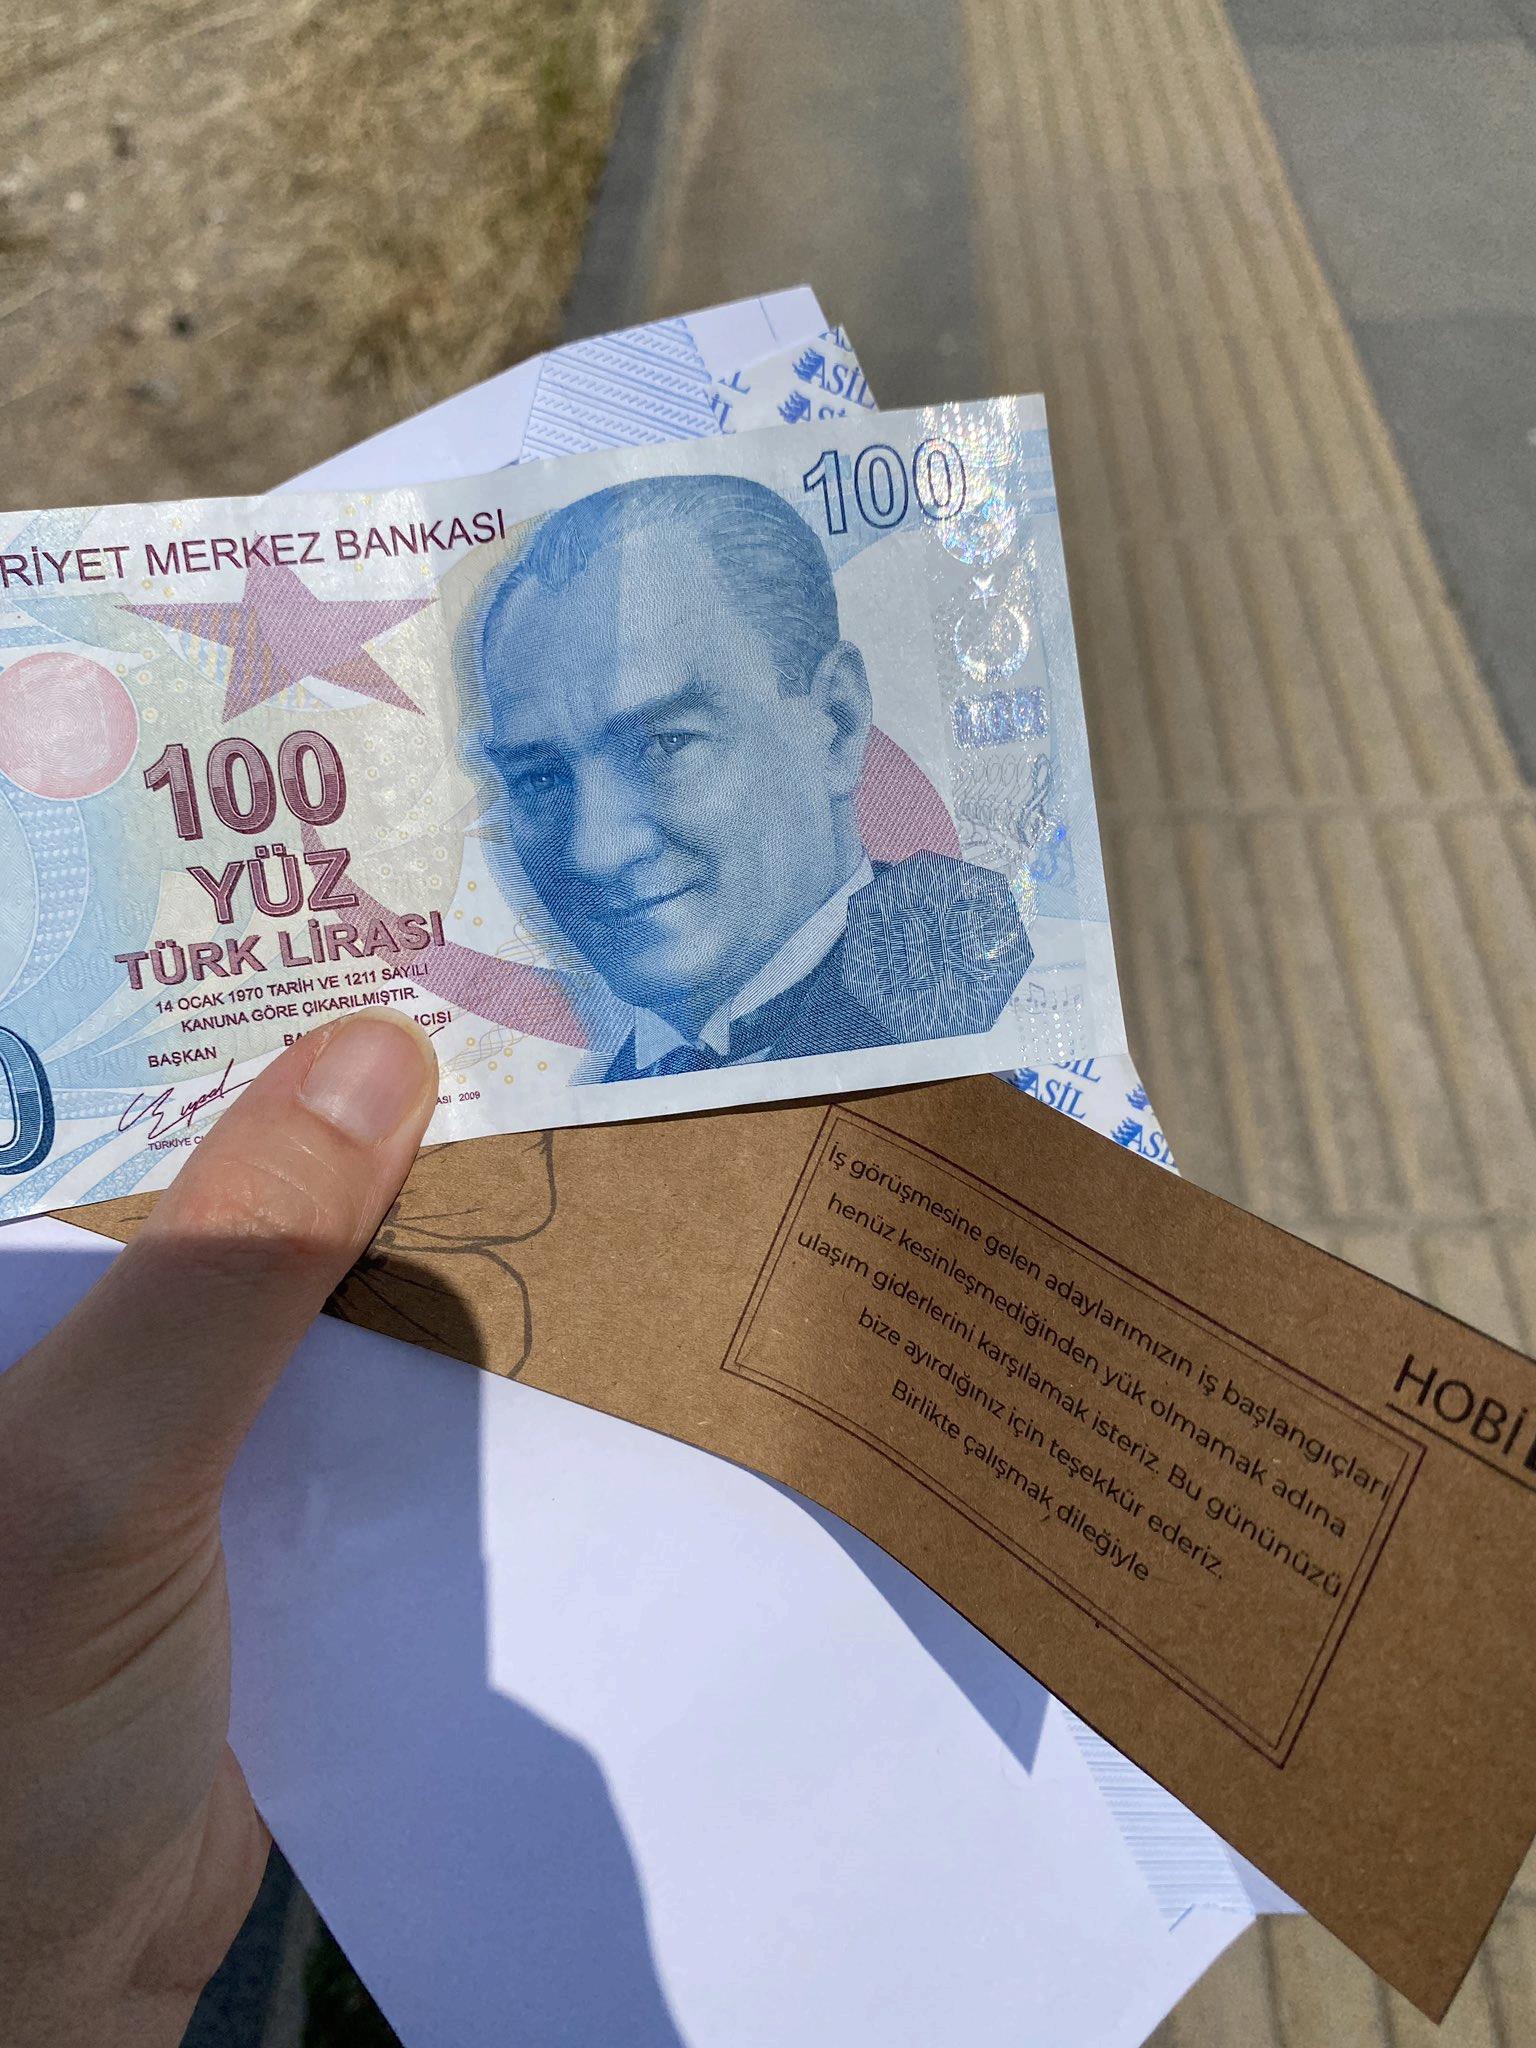 Ankara'da iş görüşmesine gelenlere yol parası hediye eden şirket takdir topladı